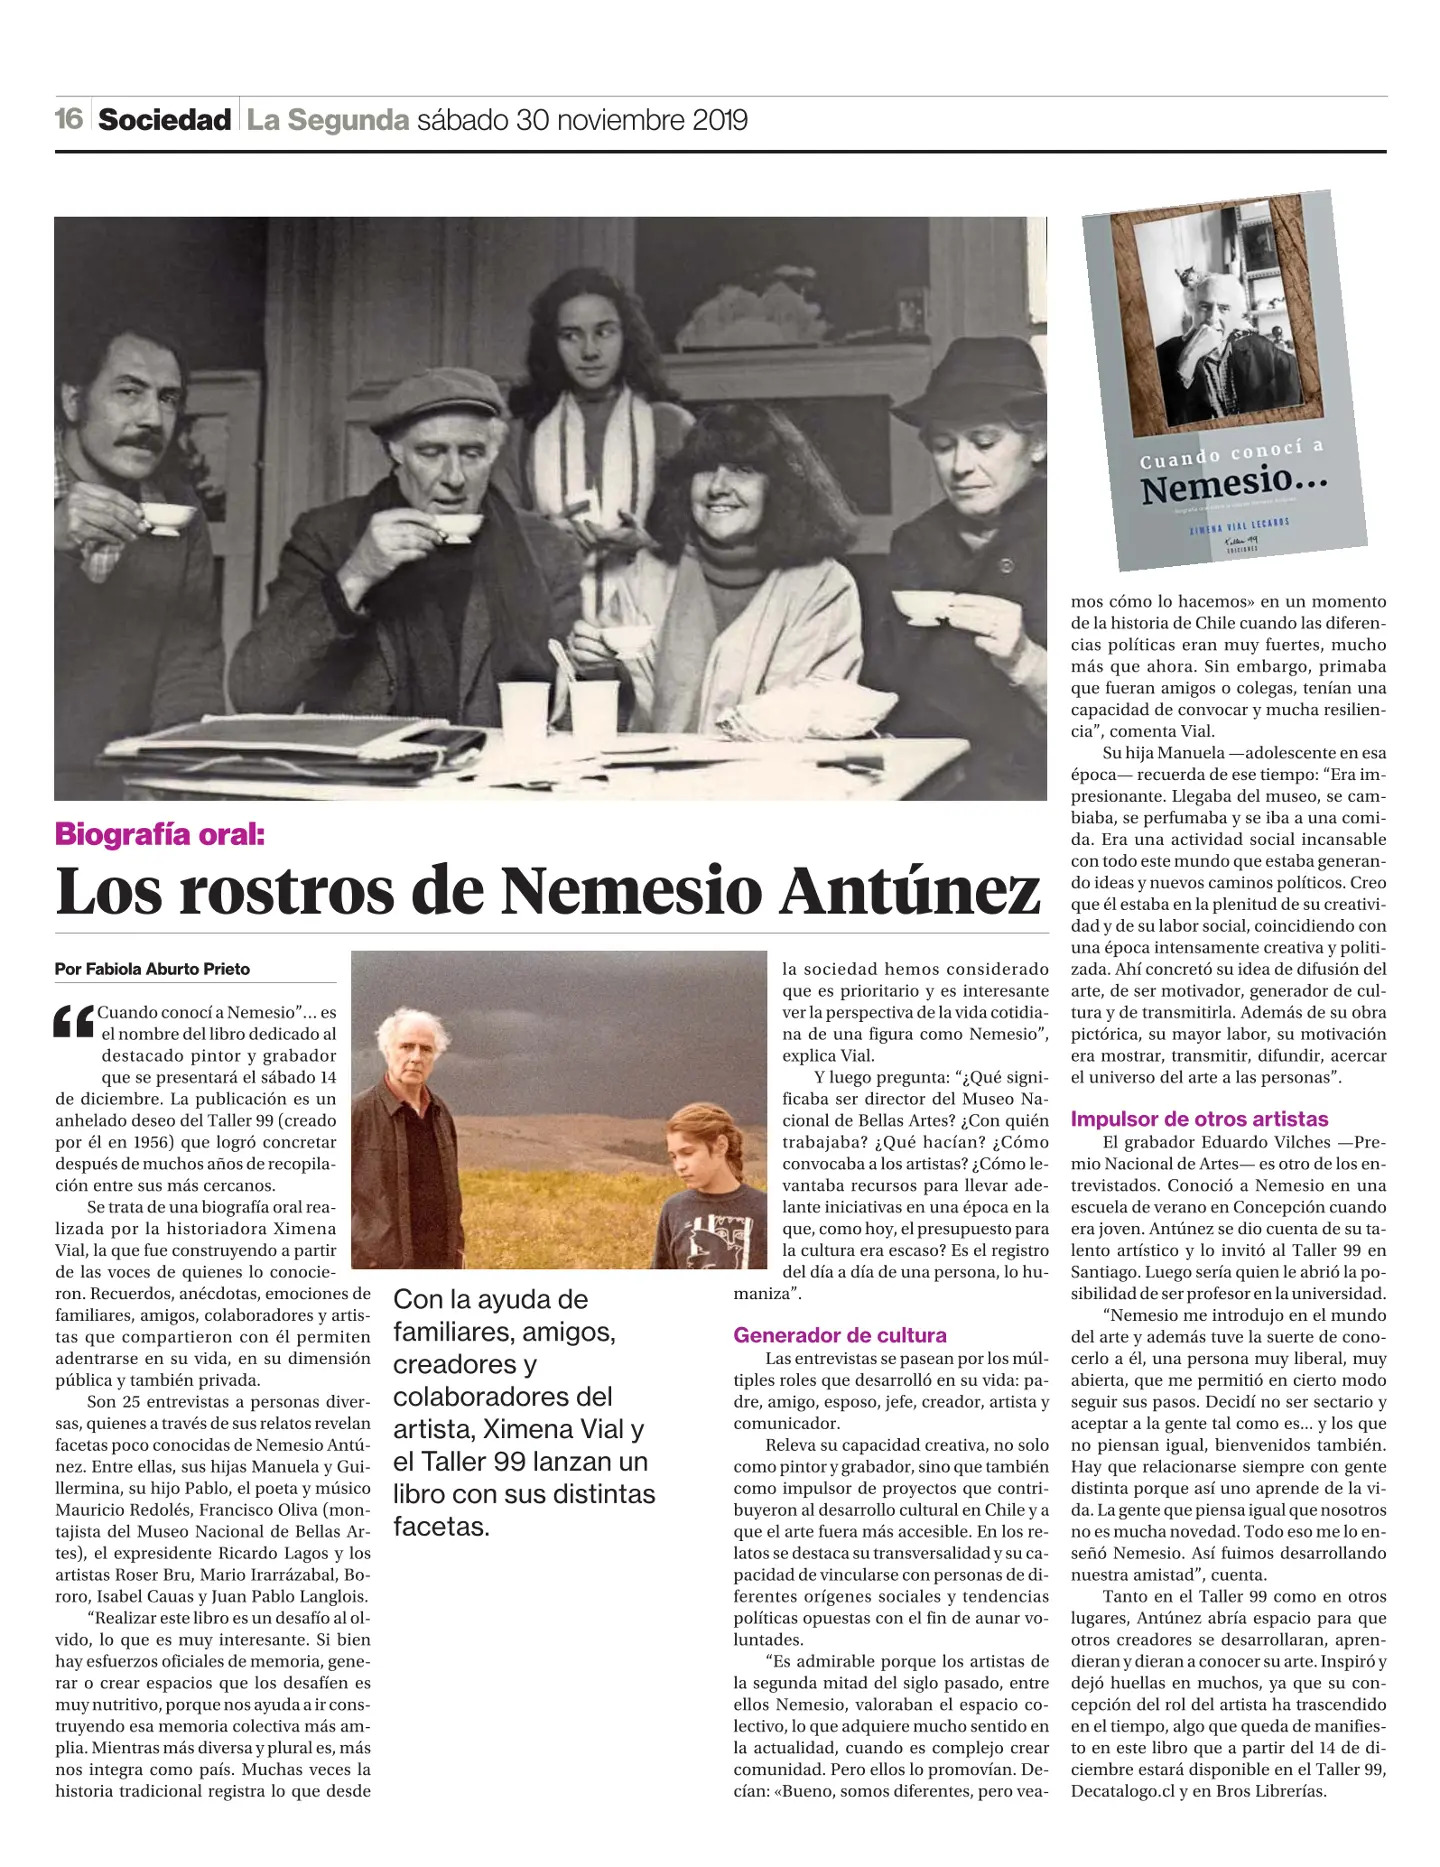 Biografía Oral: Los Rostros de Nemesio Antúnez